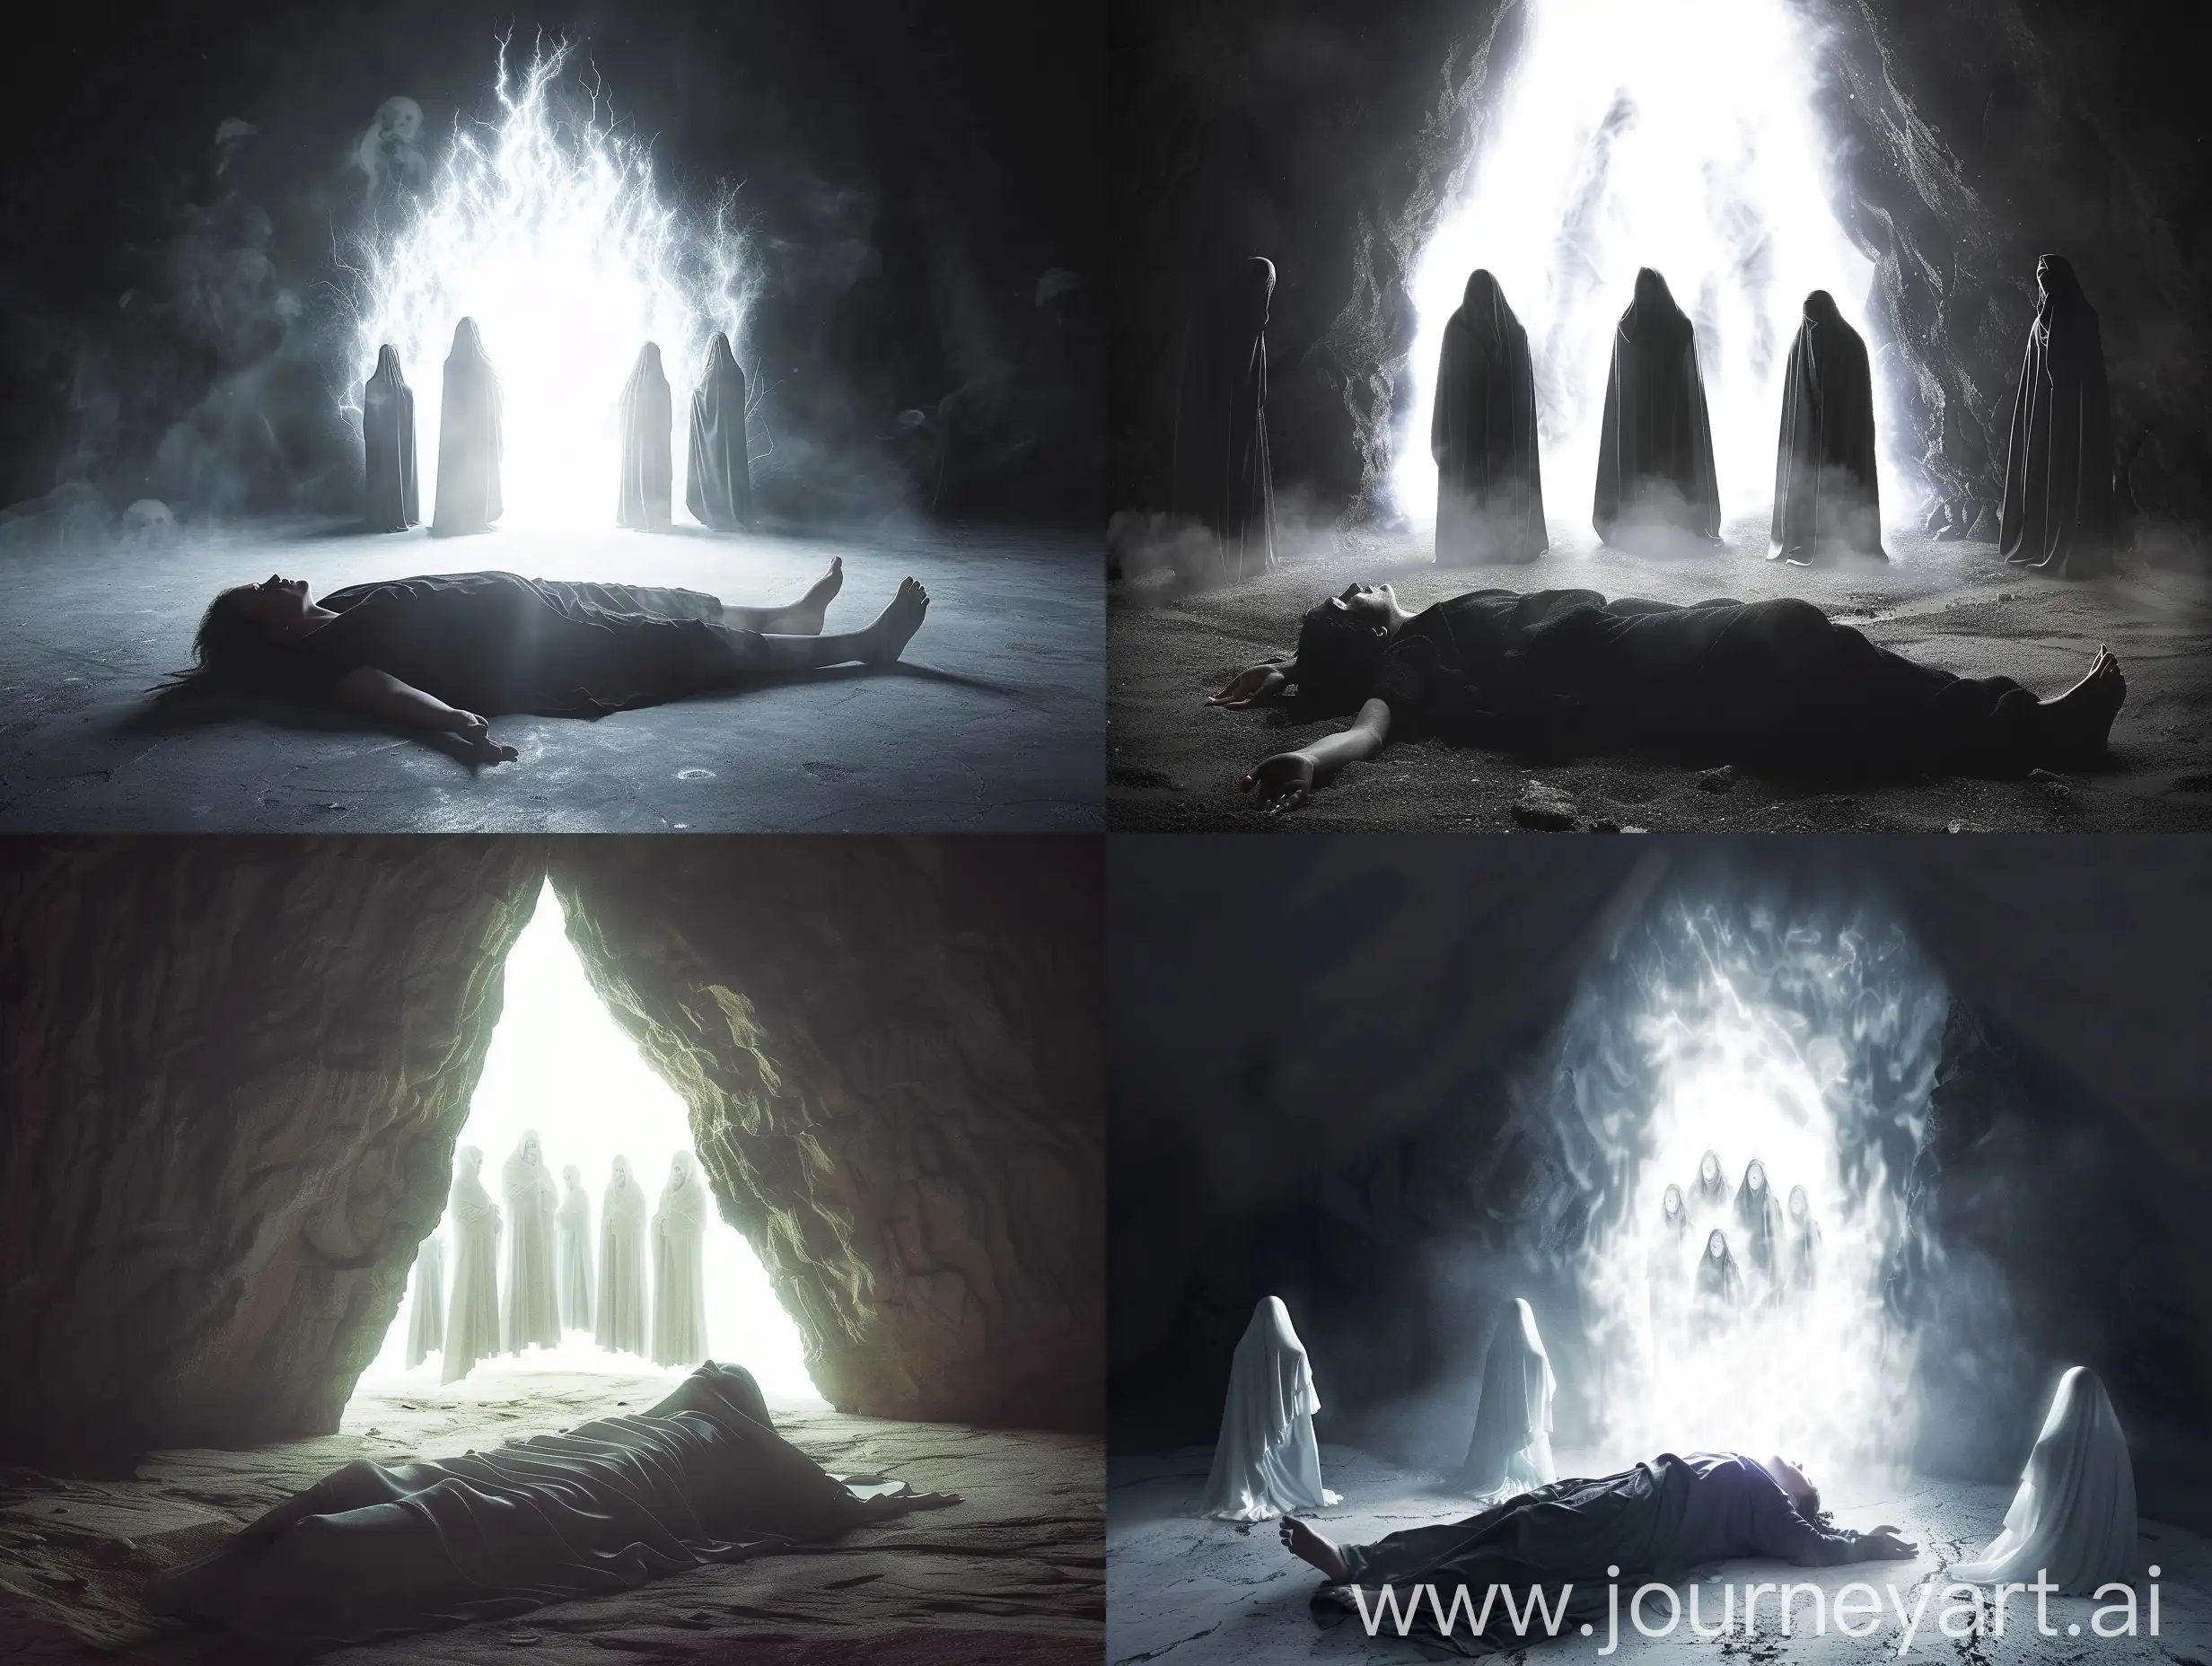 crea una fotografía realista de una persona acostada en un espacio oscuro y frente a ella un portal de luz blanca donde aparecen 5 seres con capas